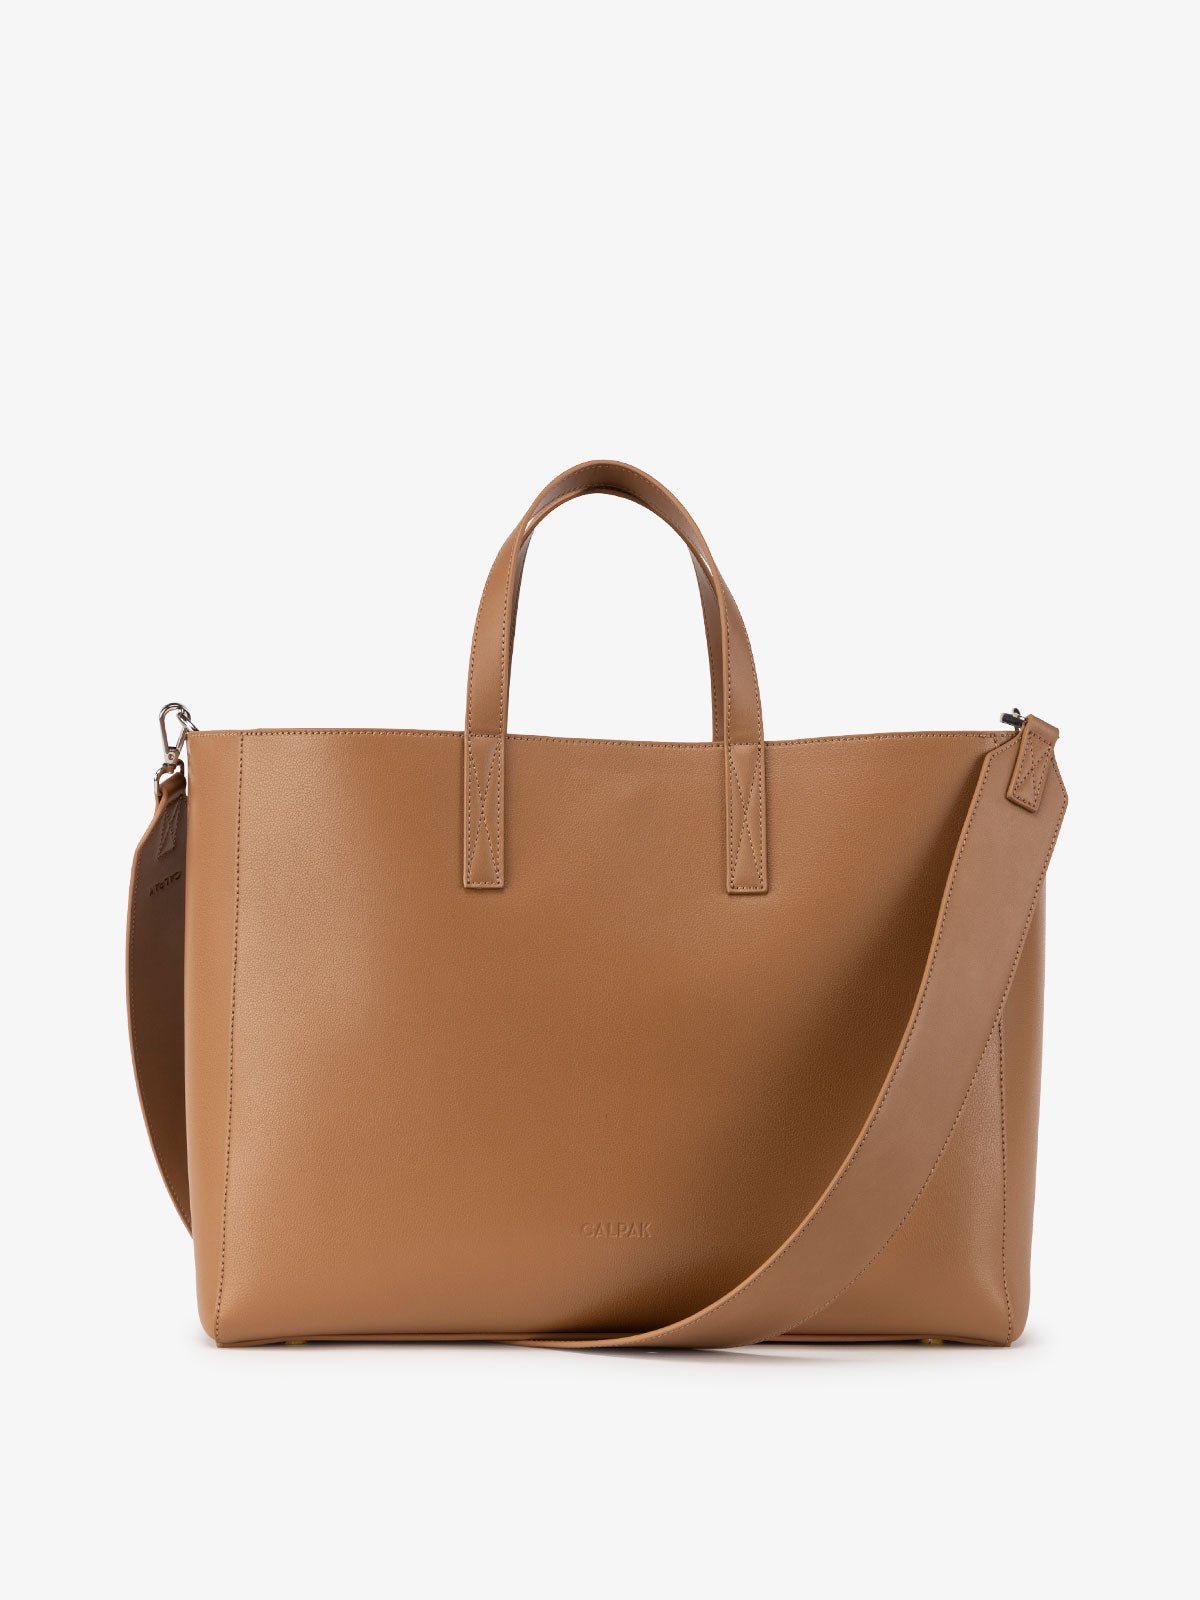 CALPAK laptop tote bag for work in brown